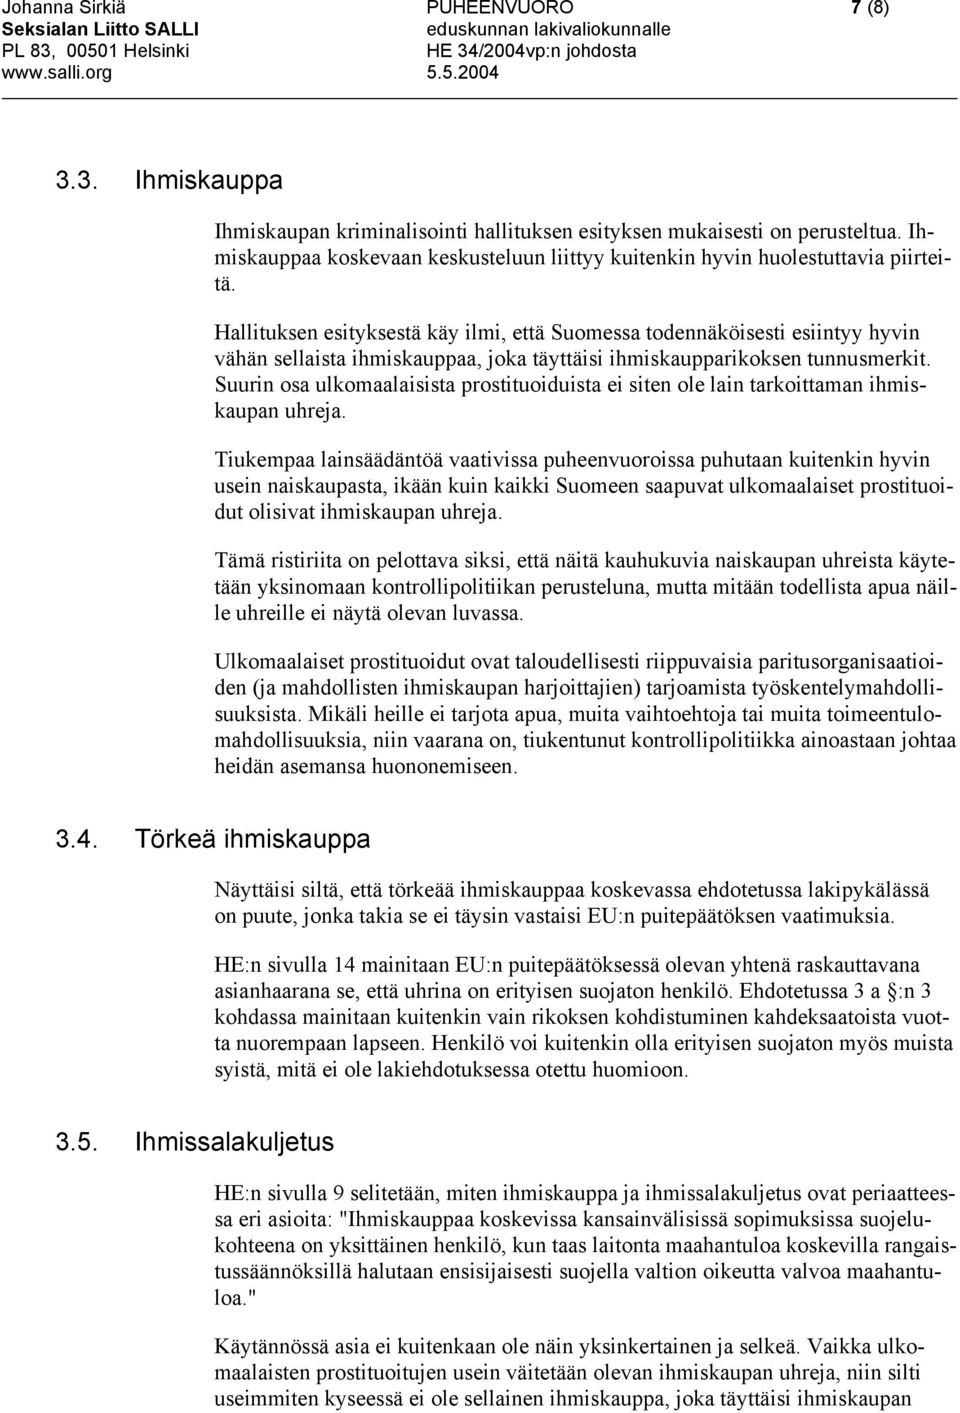 Hallituksen esityksestä käy ilmi, että Suomessa todennäköisesti esiintyy hyvin vähän sellaista ihmiskauppaa, joka täyttäisi ihmiskaupparikoksen tunnusmerkit.